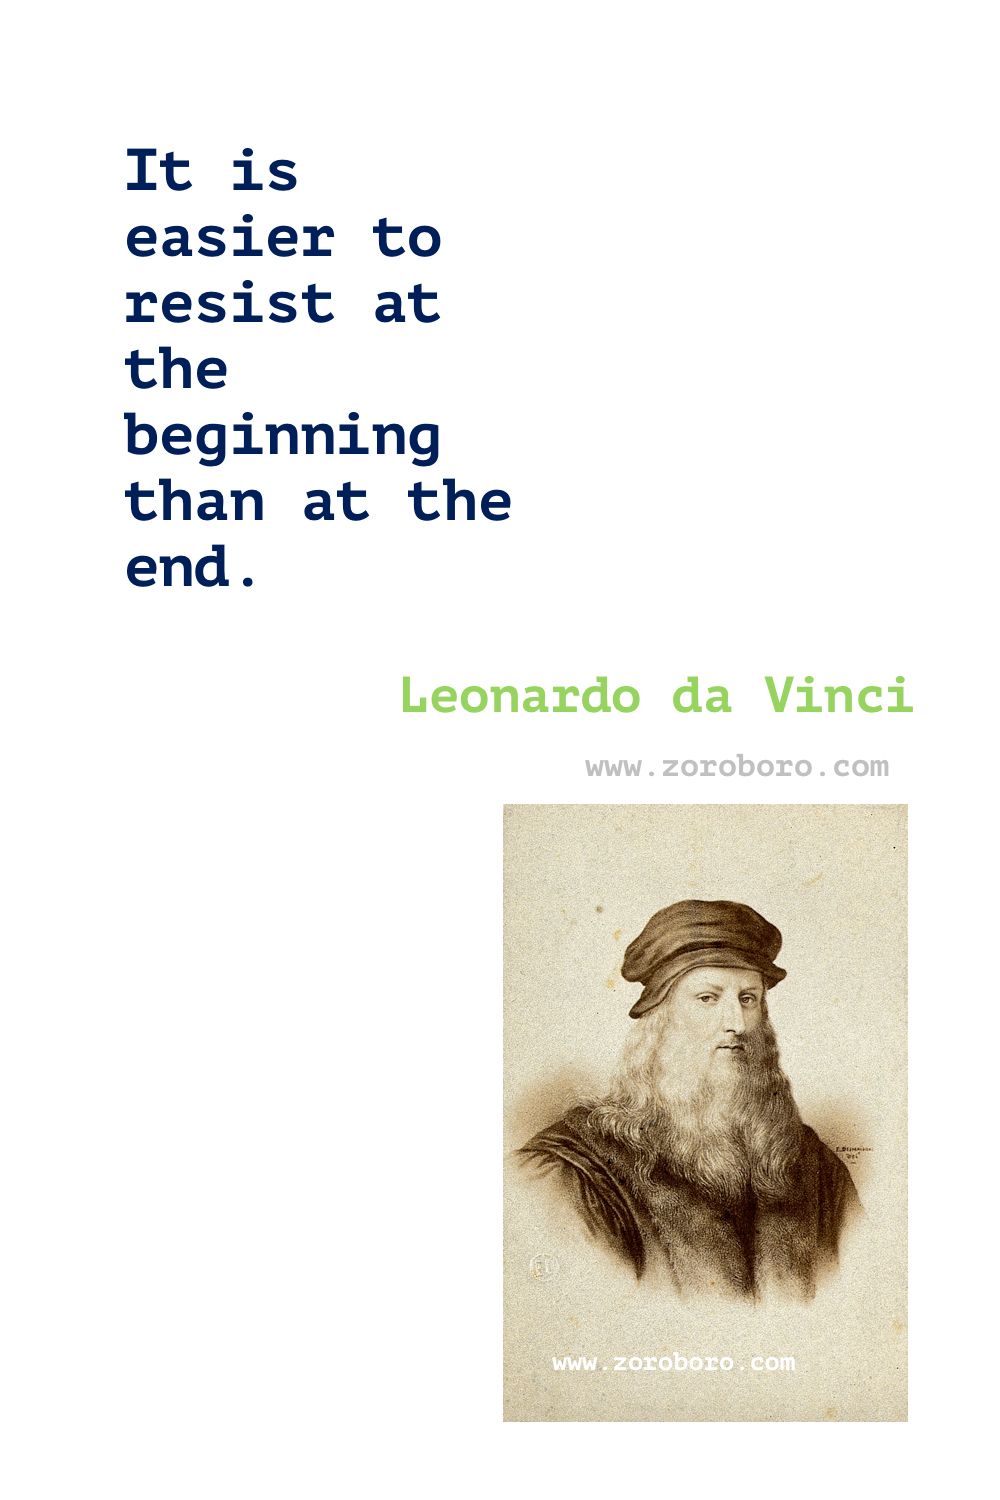 Leonardo da Vinci Quotes, Leonardo da Vinci Art Quotes, Leonardo da Vinci Philosophy, Leonardo da Vinci Diary, Writings & Work Quotes, Leonardo da Vinci Painting Quotes, Leonardo da Vinci Books Quotes.